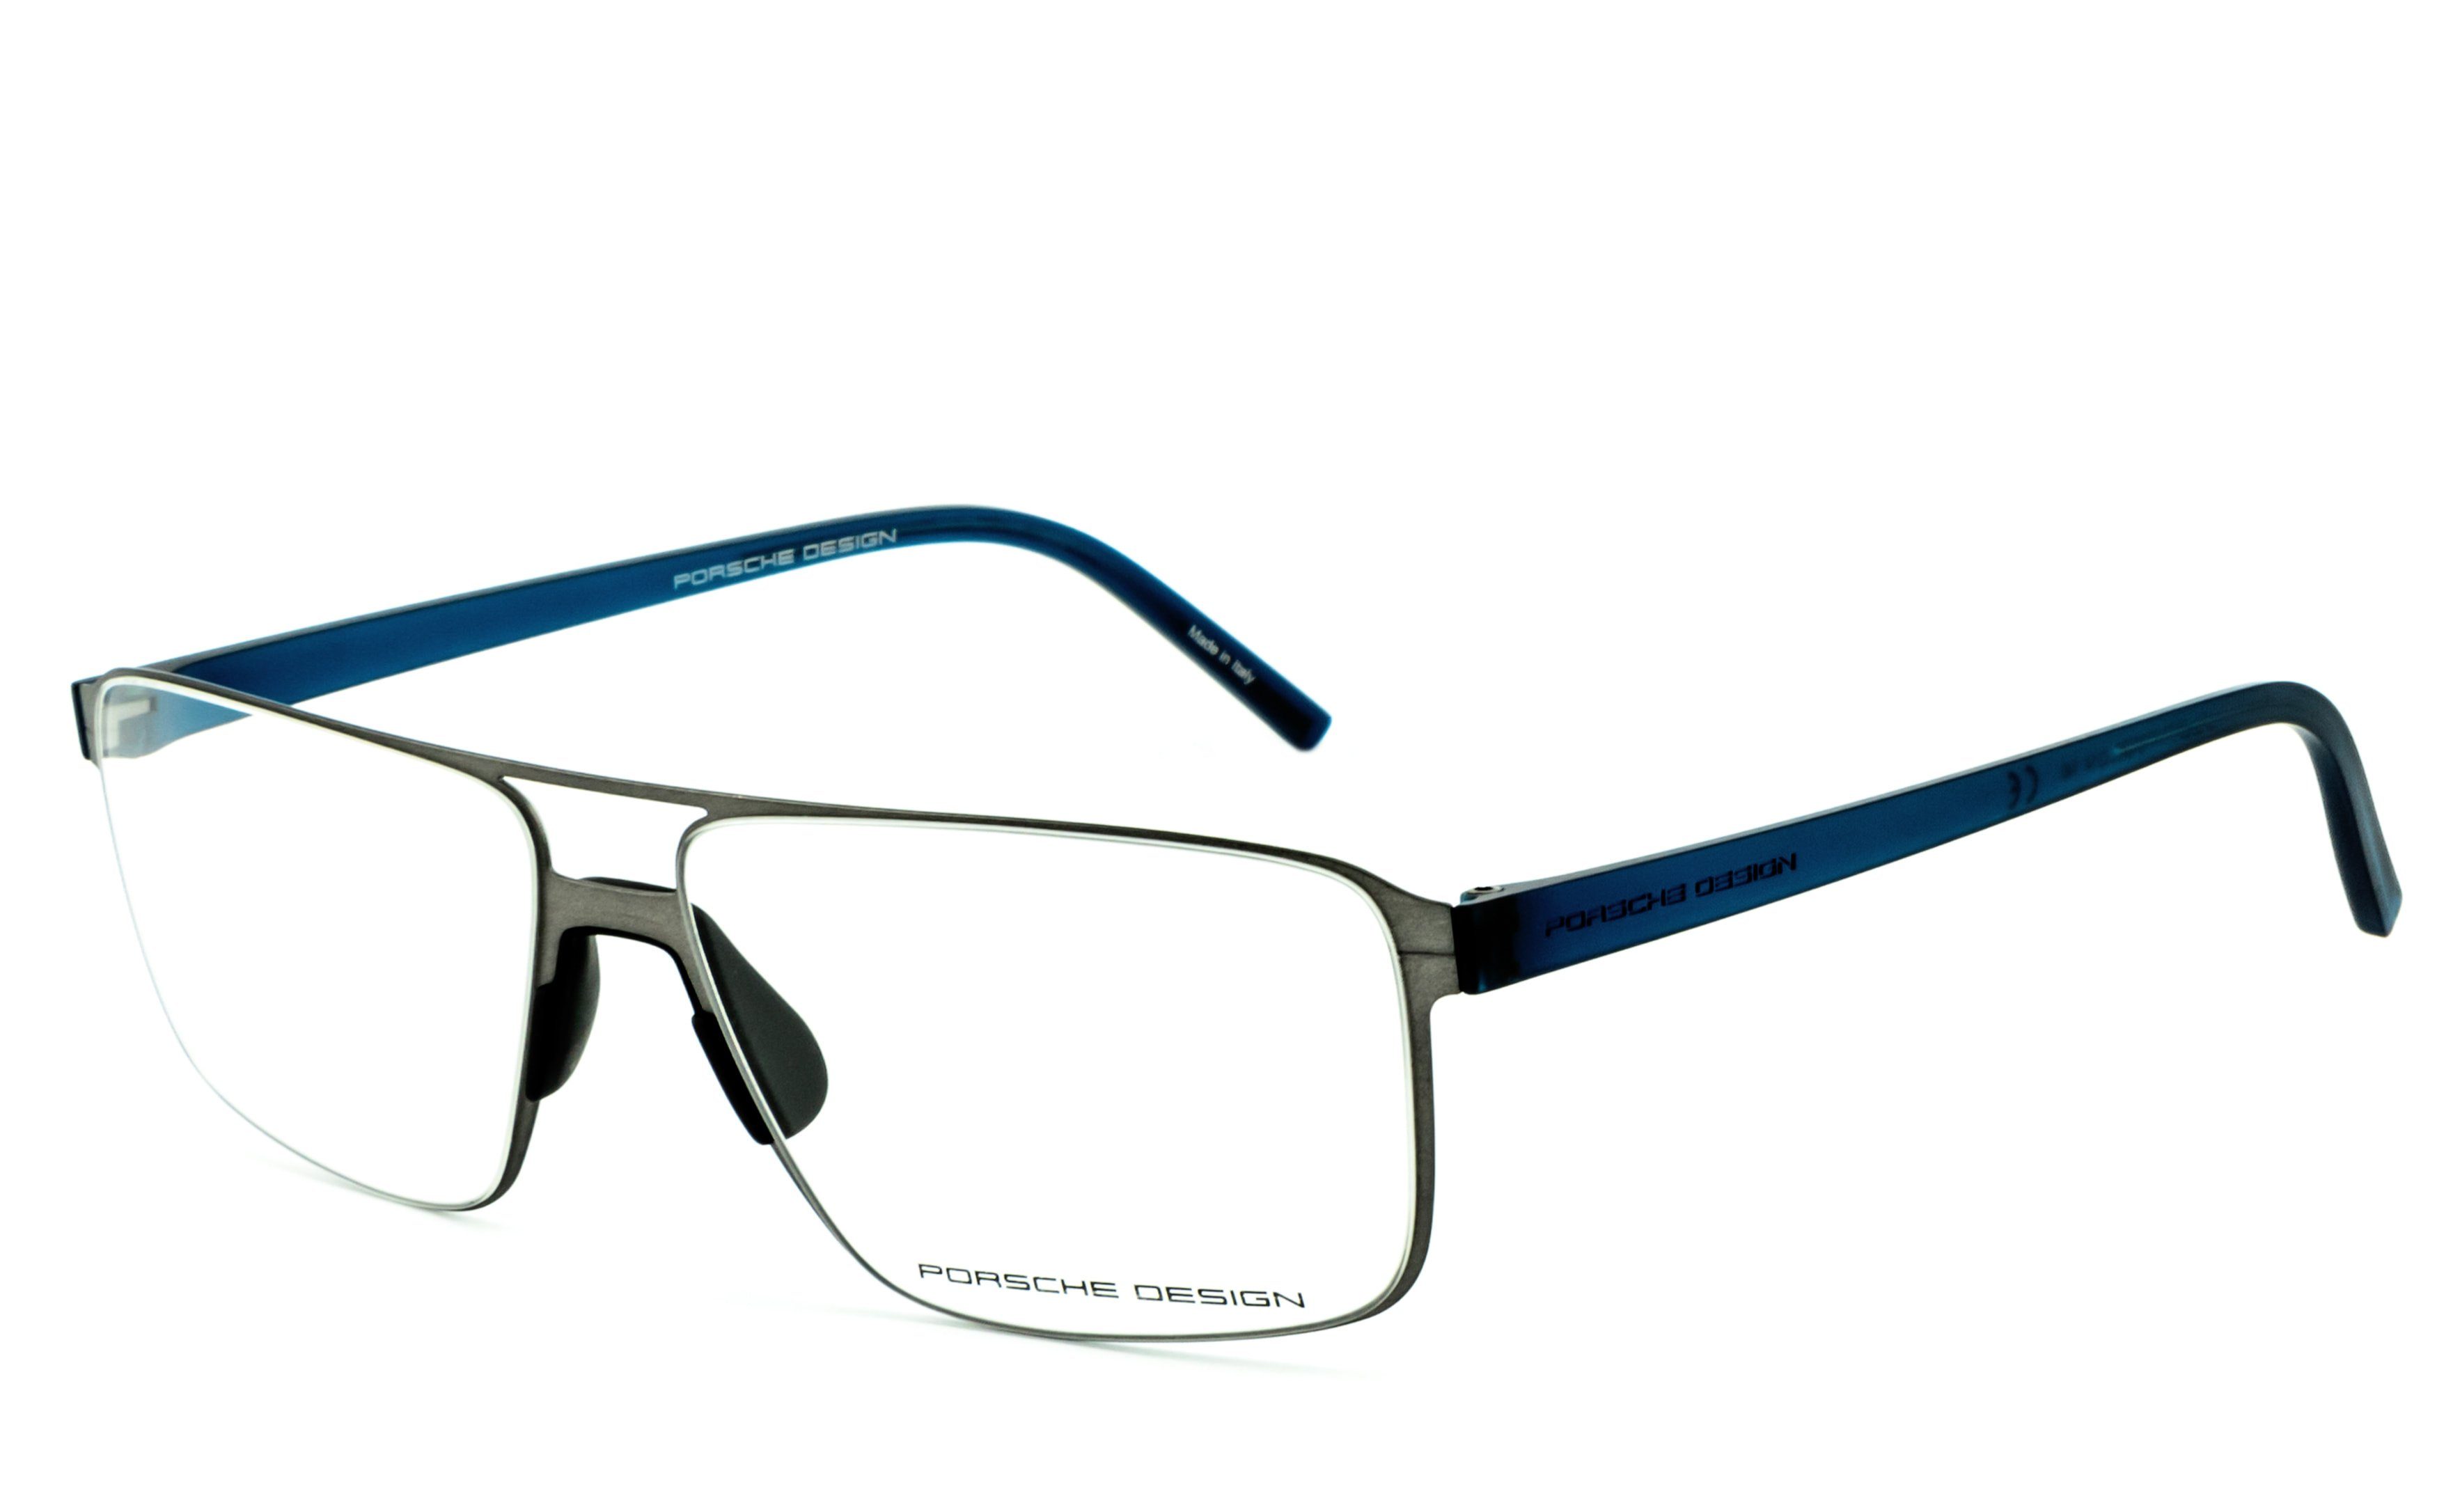 PORSCHE Design Brille P8307 B, HLT® Qualitätsgläser